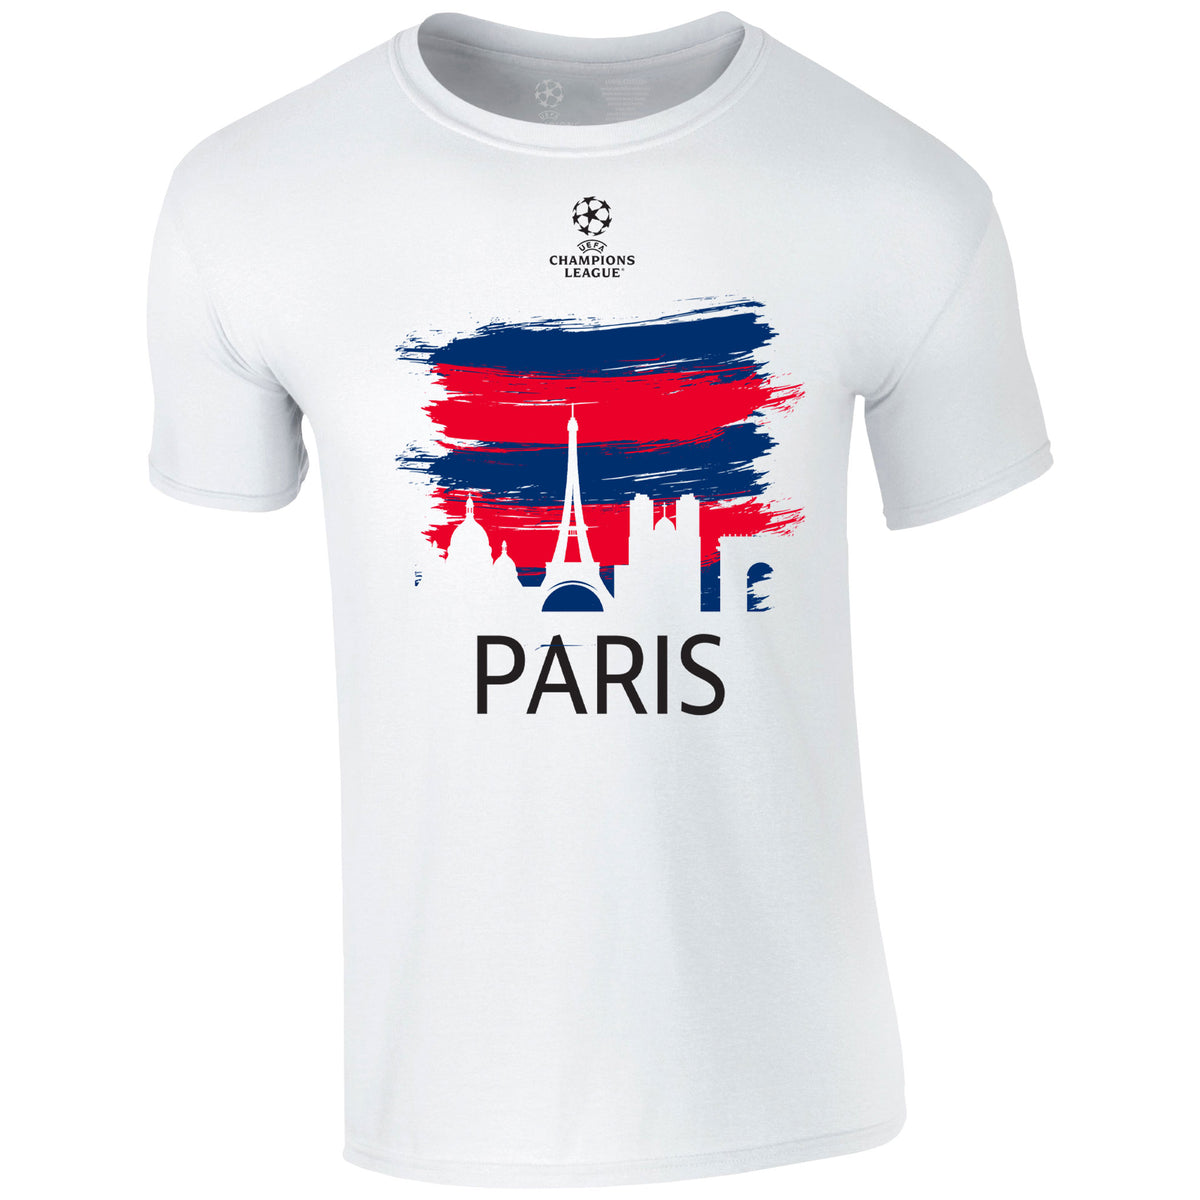 Champions League Paris City Painted Skyline T-Shirt White